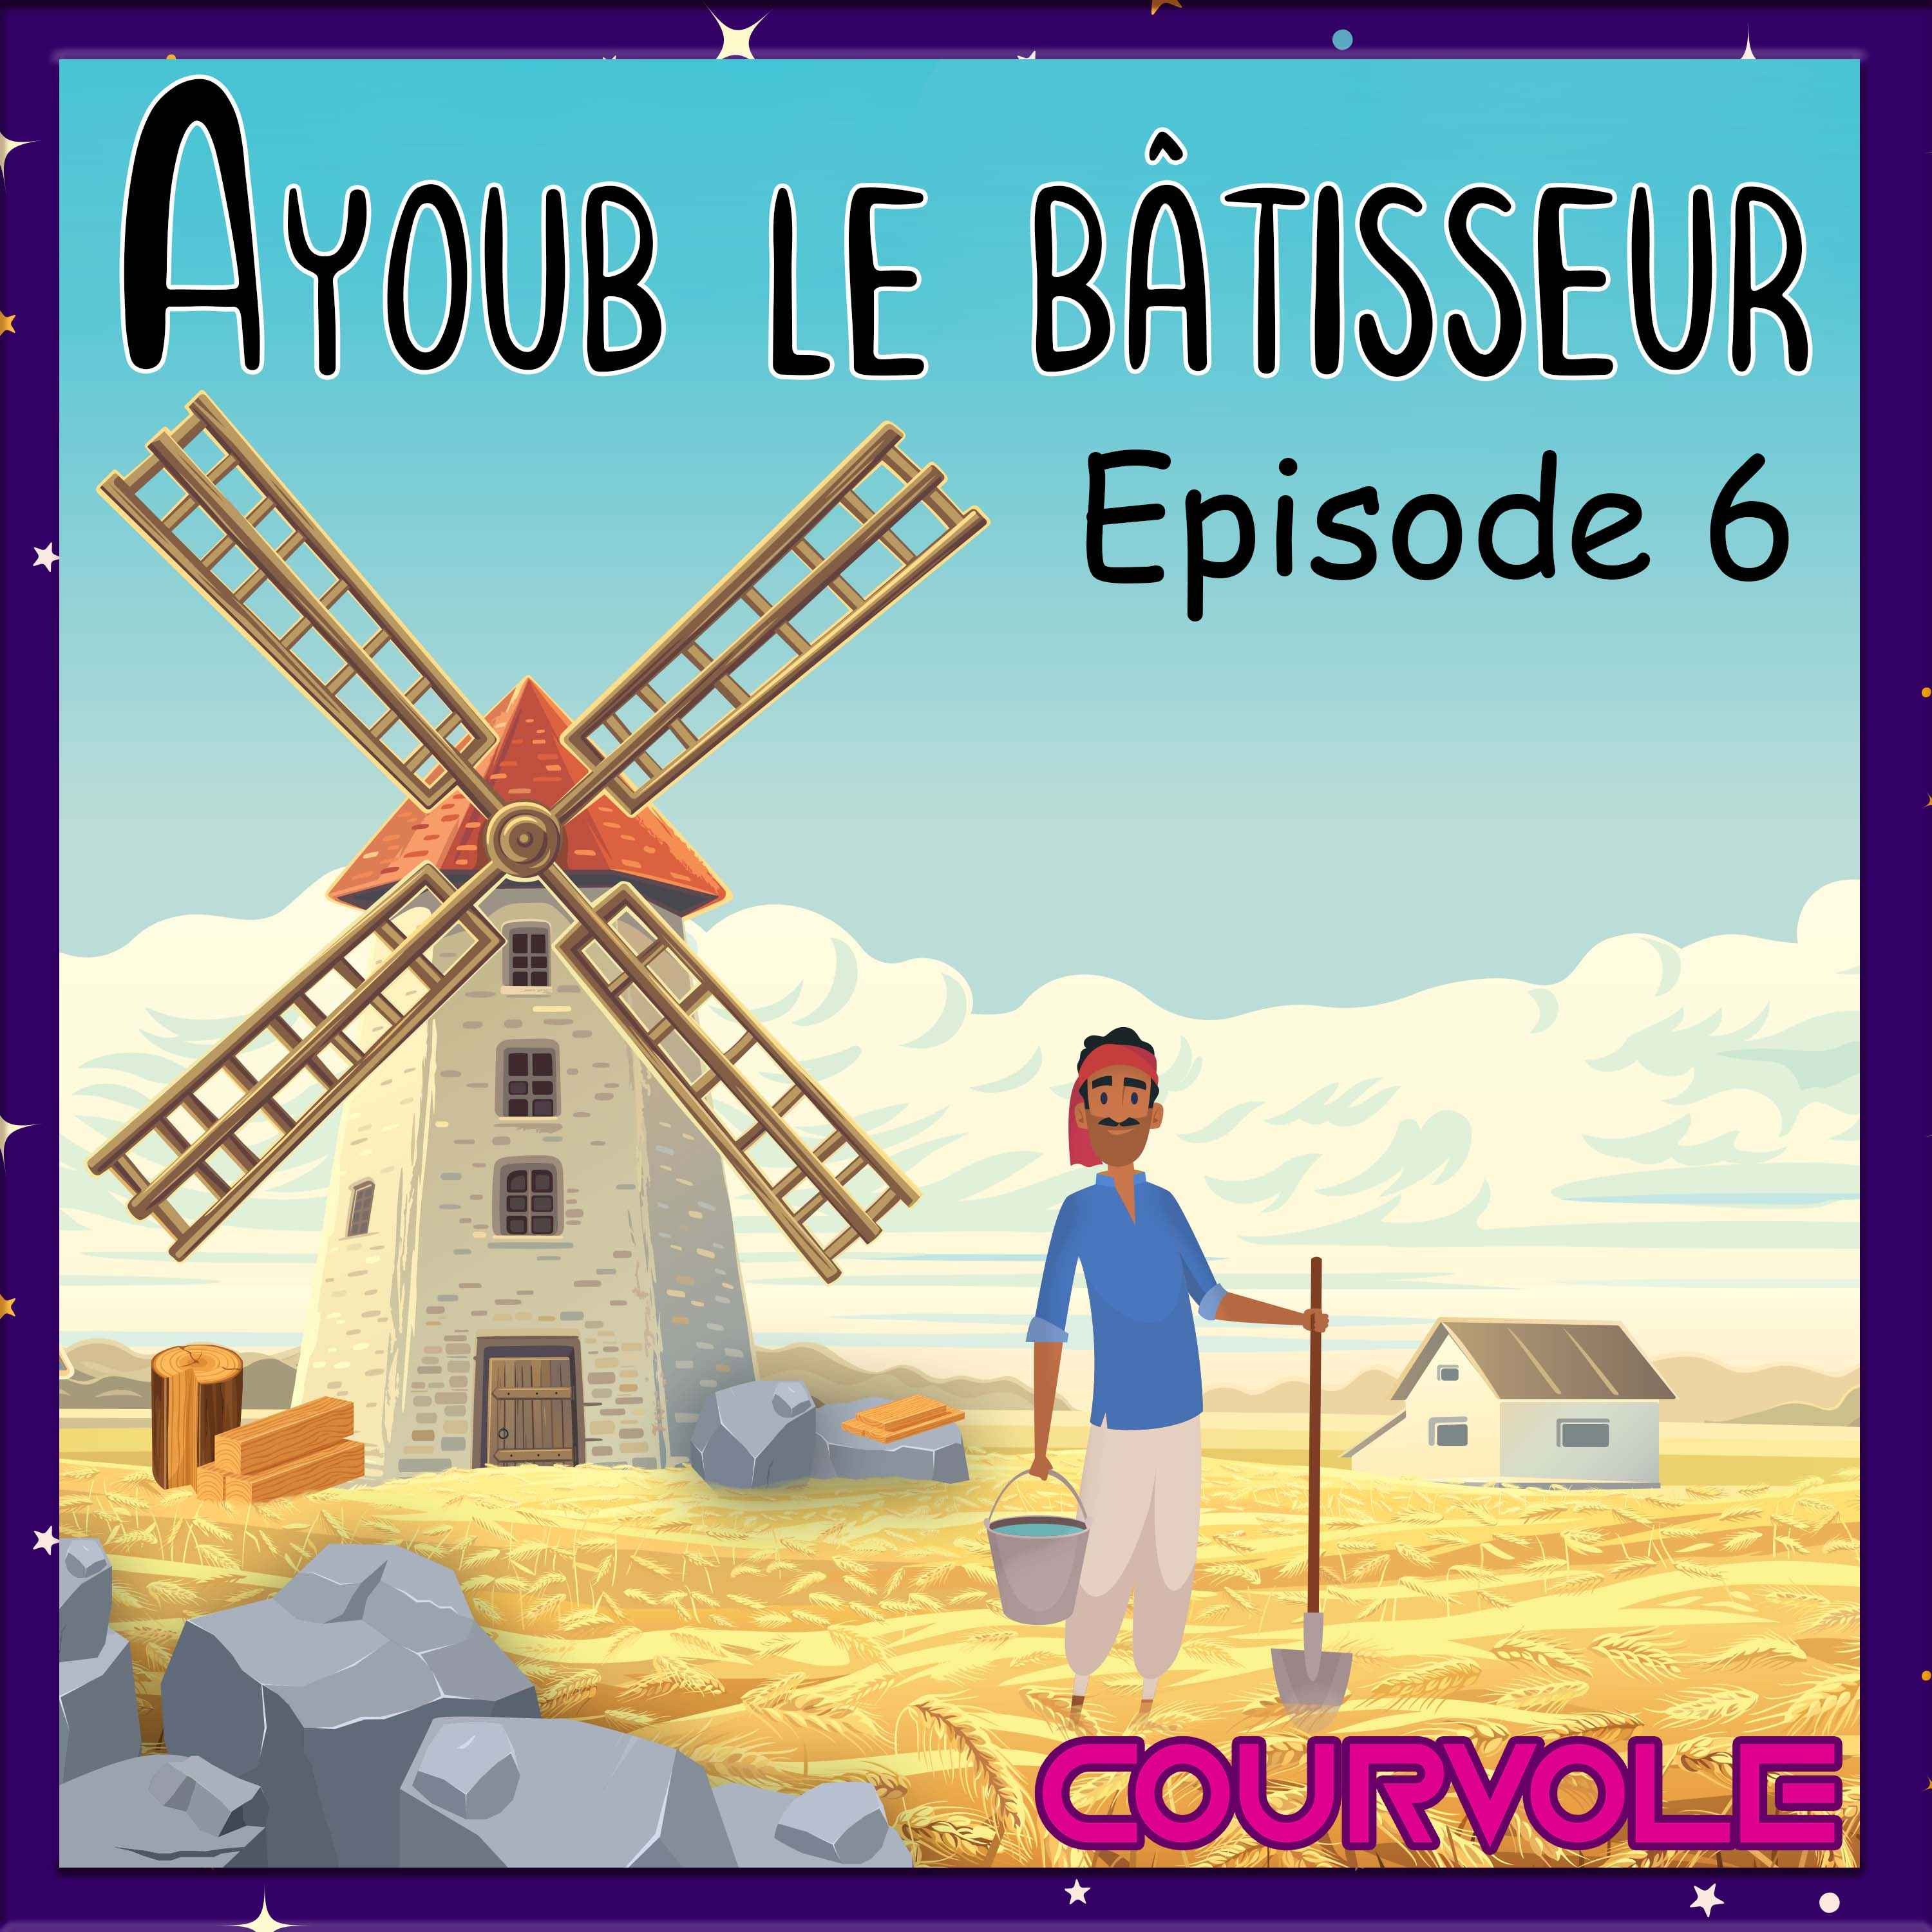 Ayoub le bâtisseur - Episode 6 Image